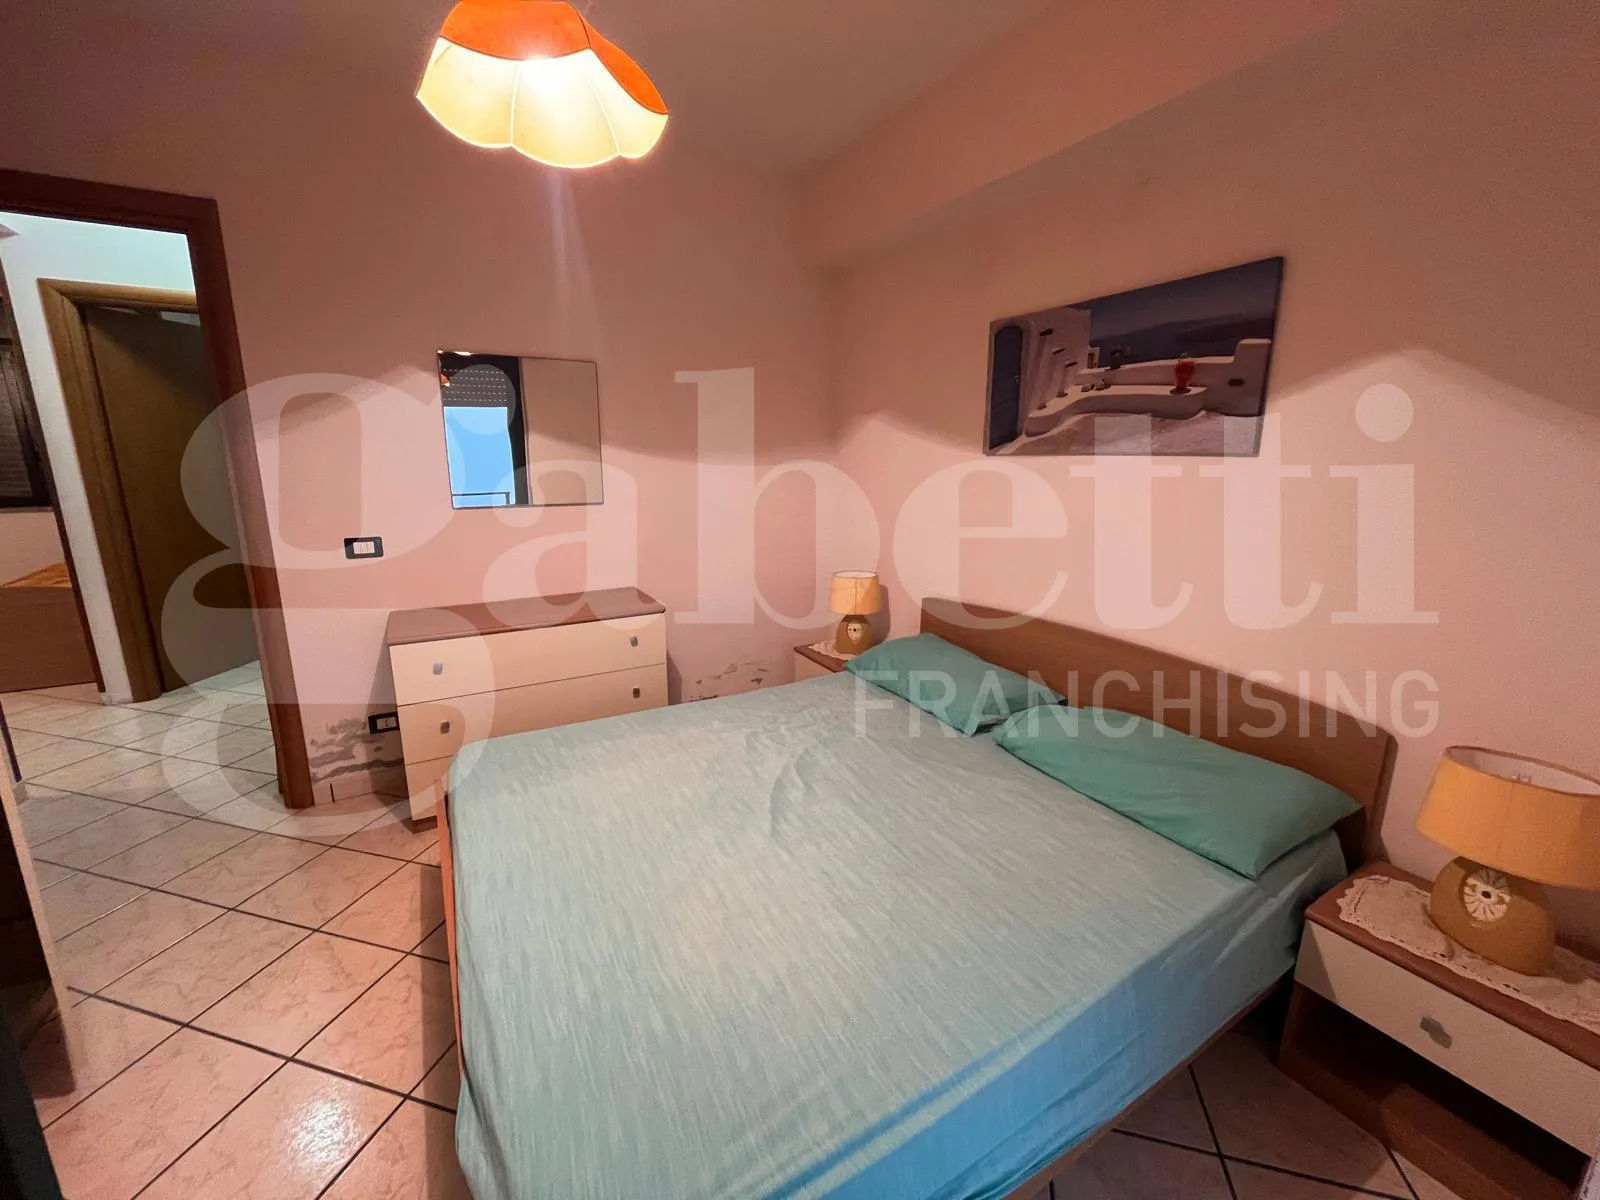 Immagine per Appartamento in vendita a Maierà via Contrada Ariesta